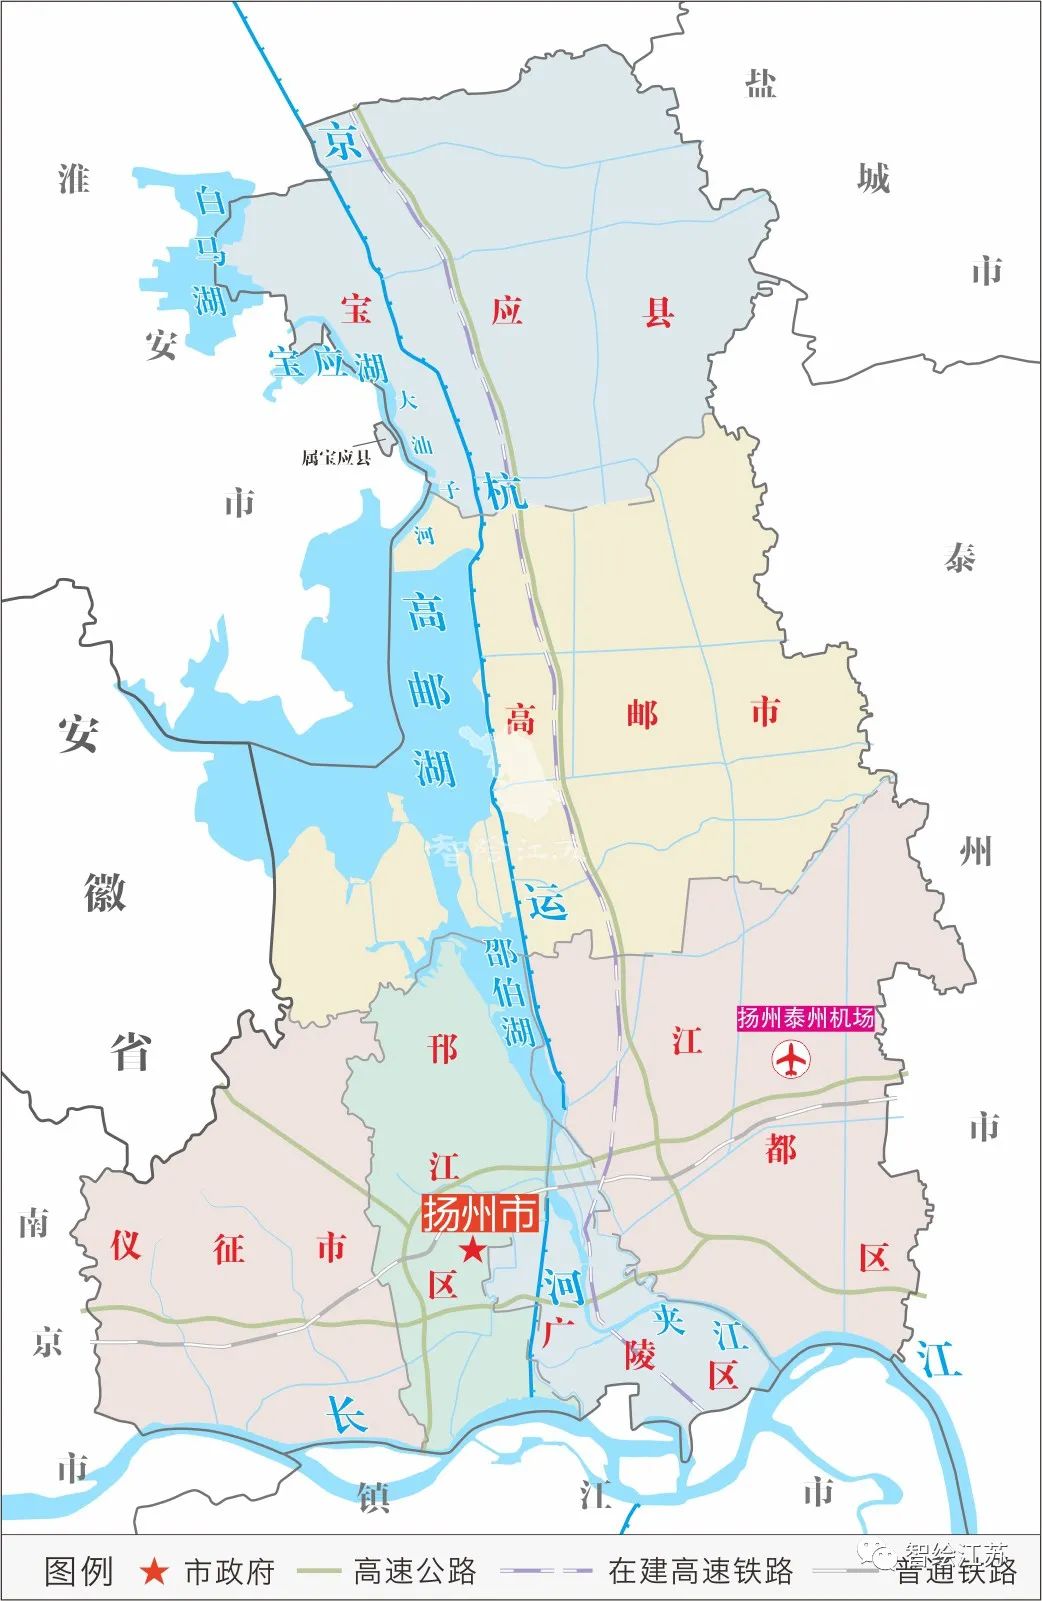 2个县级市(高邮,仪征),扬州现辖3个区(邗江,广陵,江都),西北部与淮安